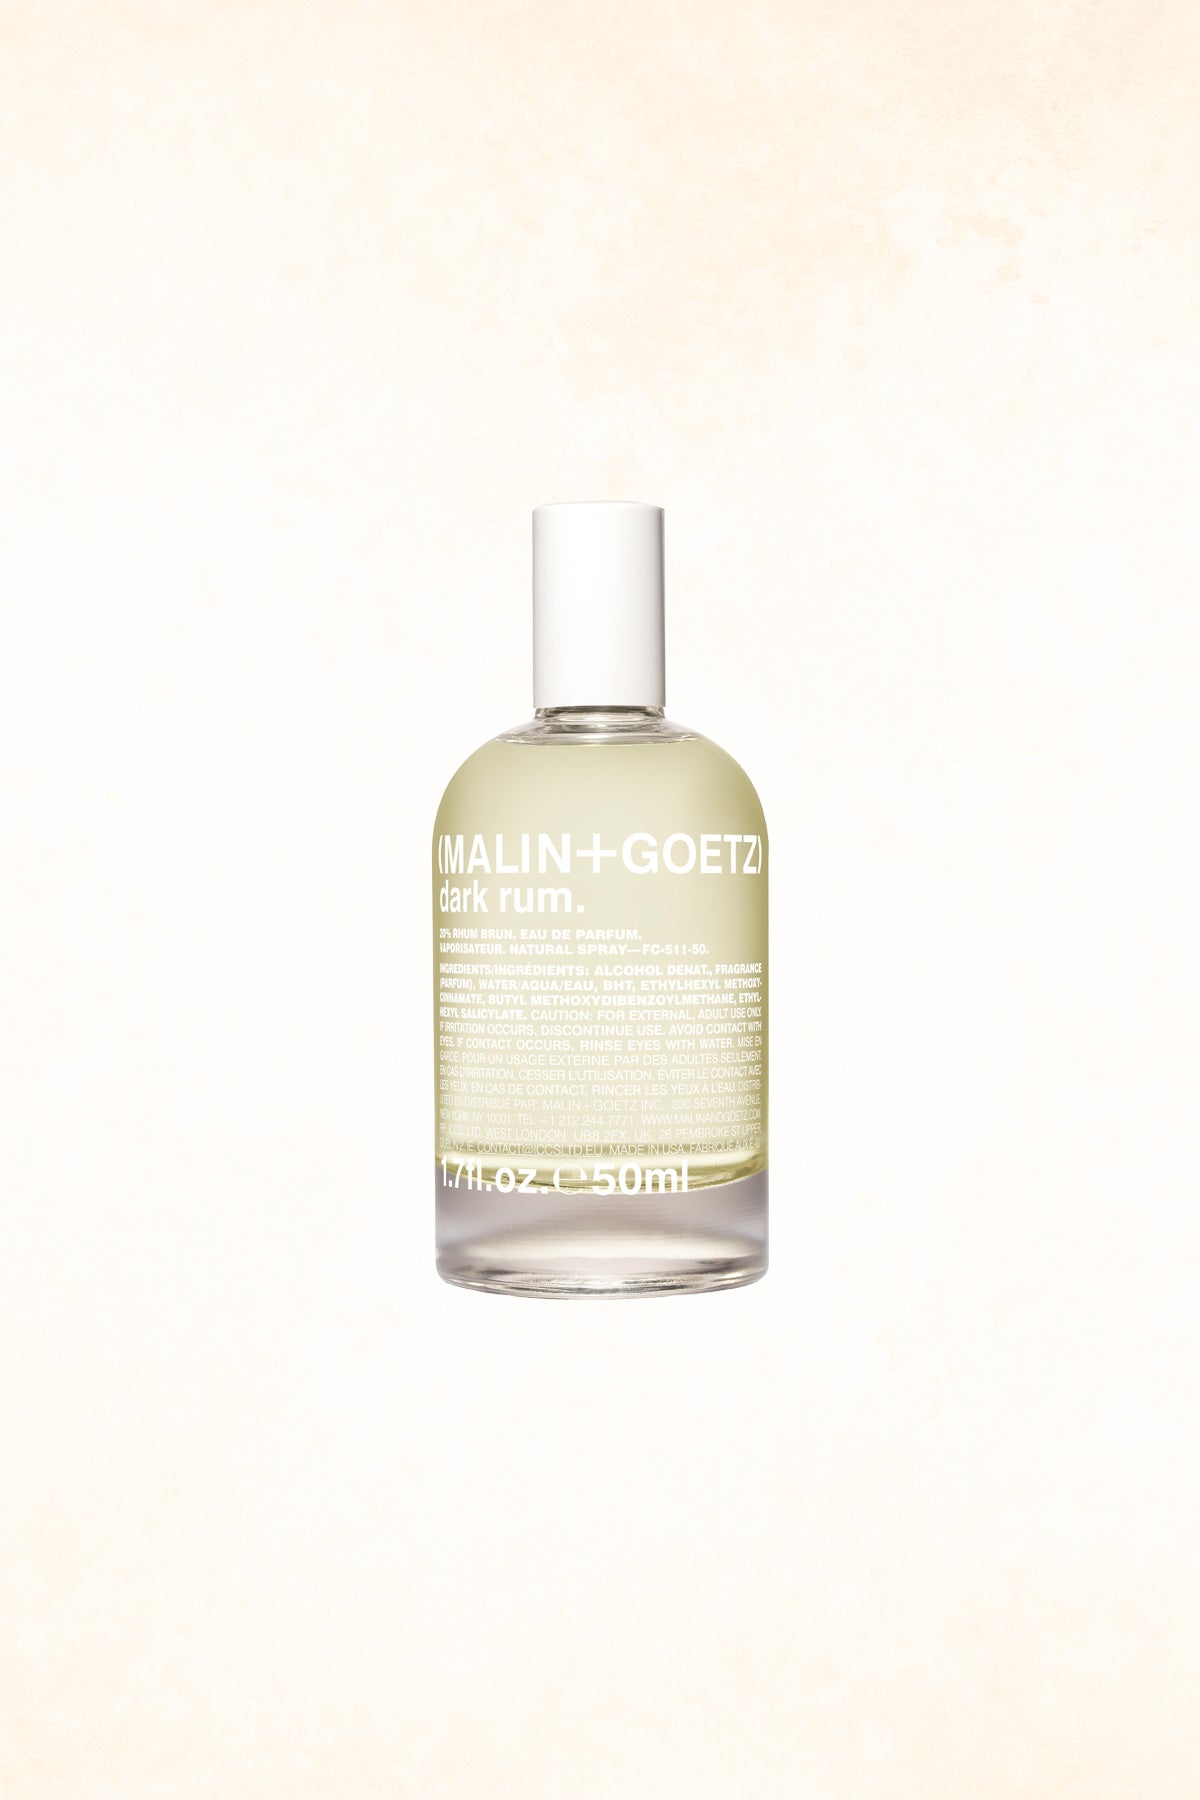 Malin+Goetz – Dark Rum Eau De Parfum 1.7 oz / 50 ml